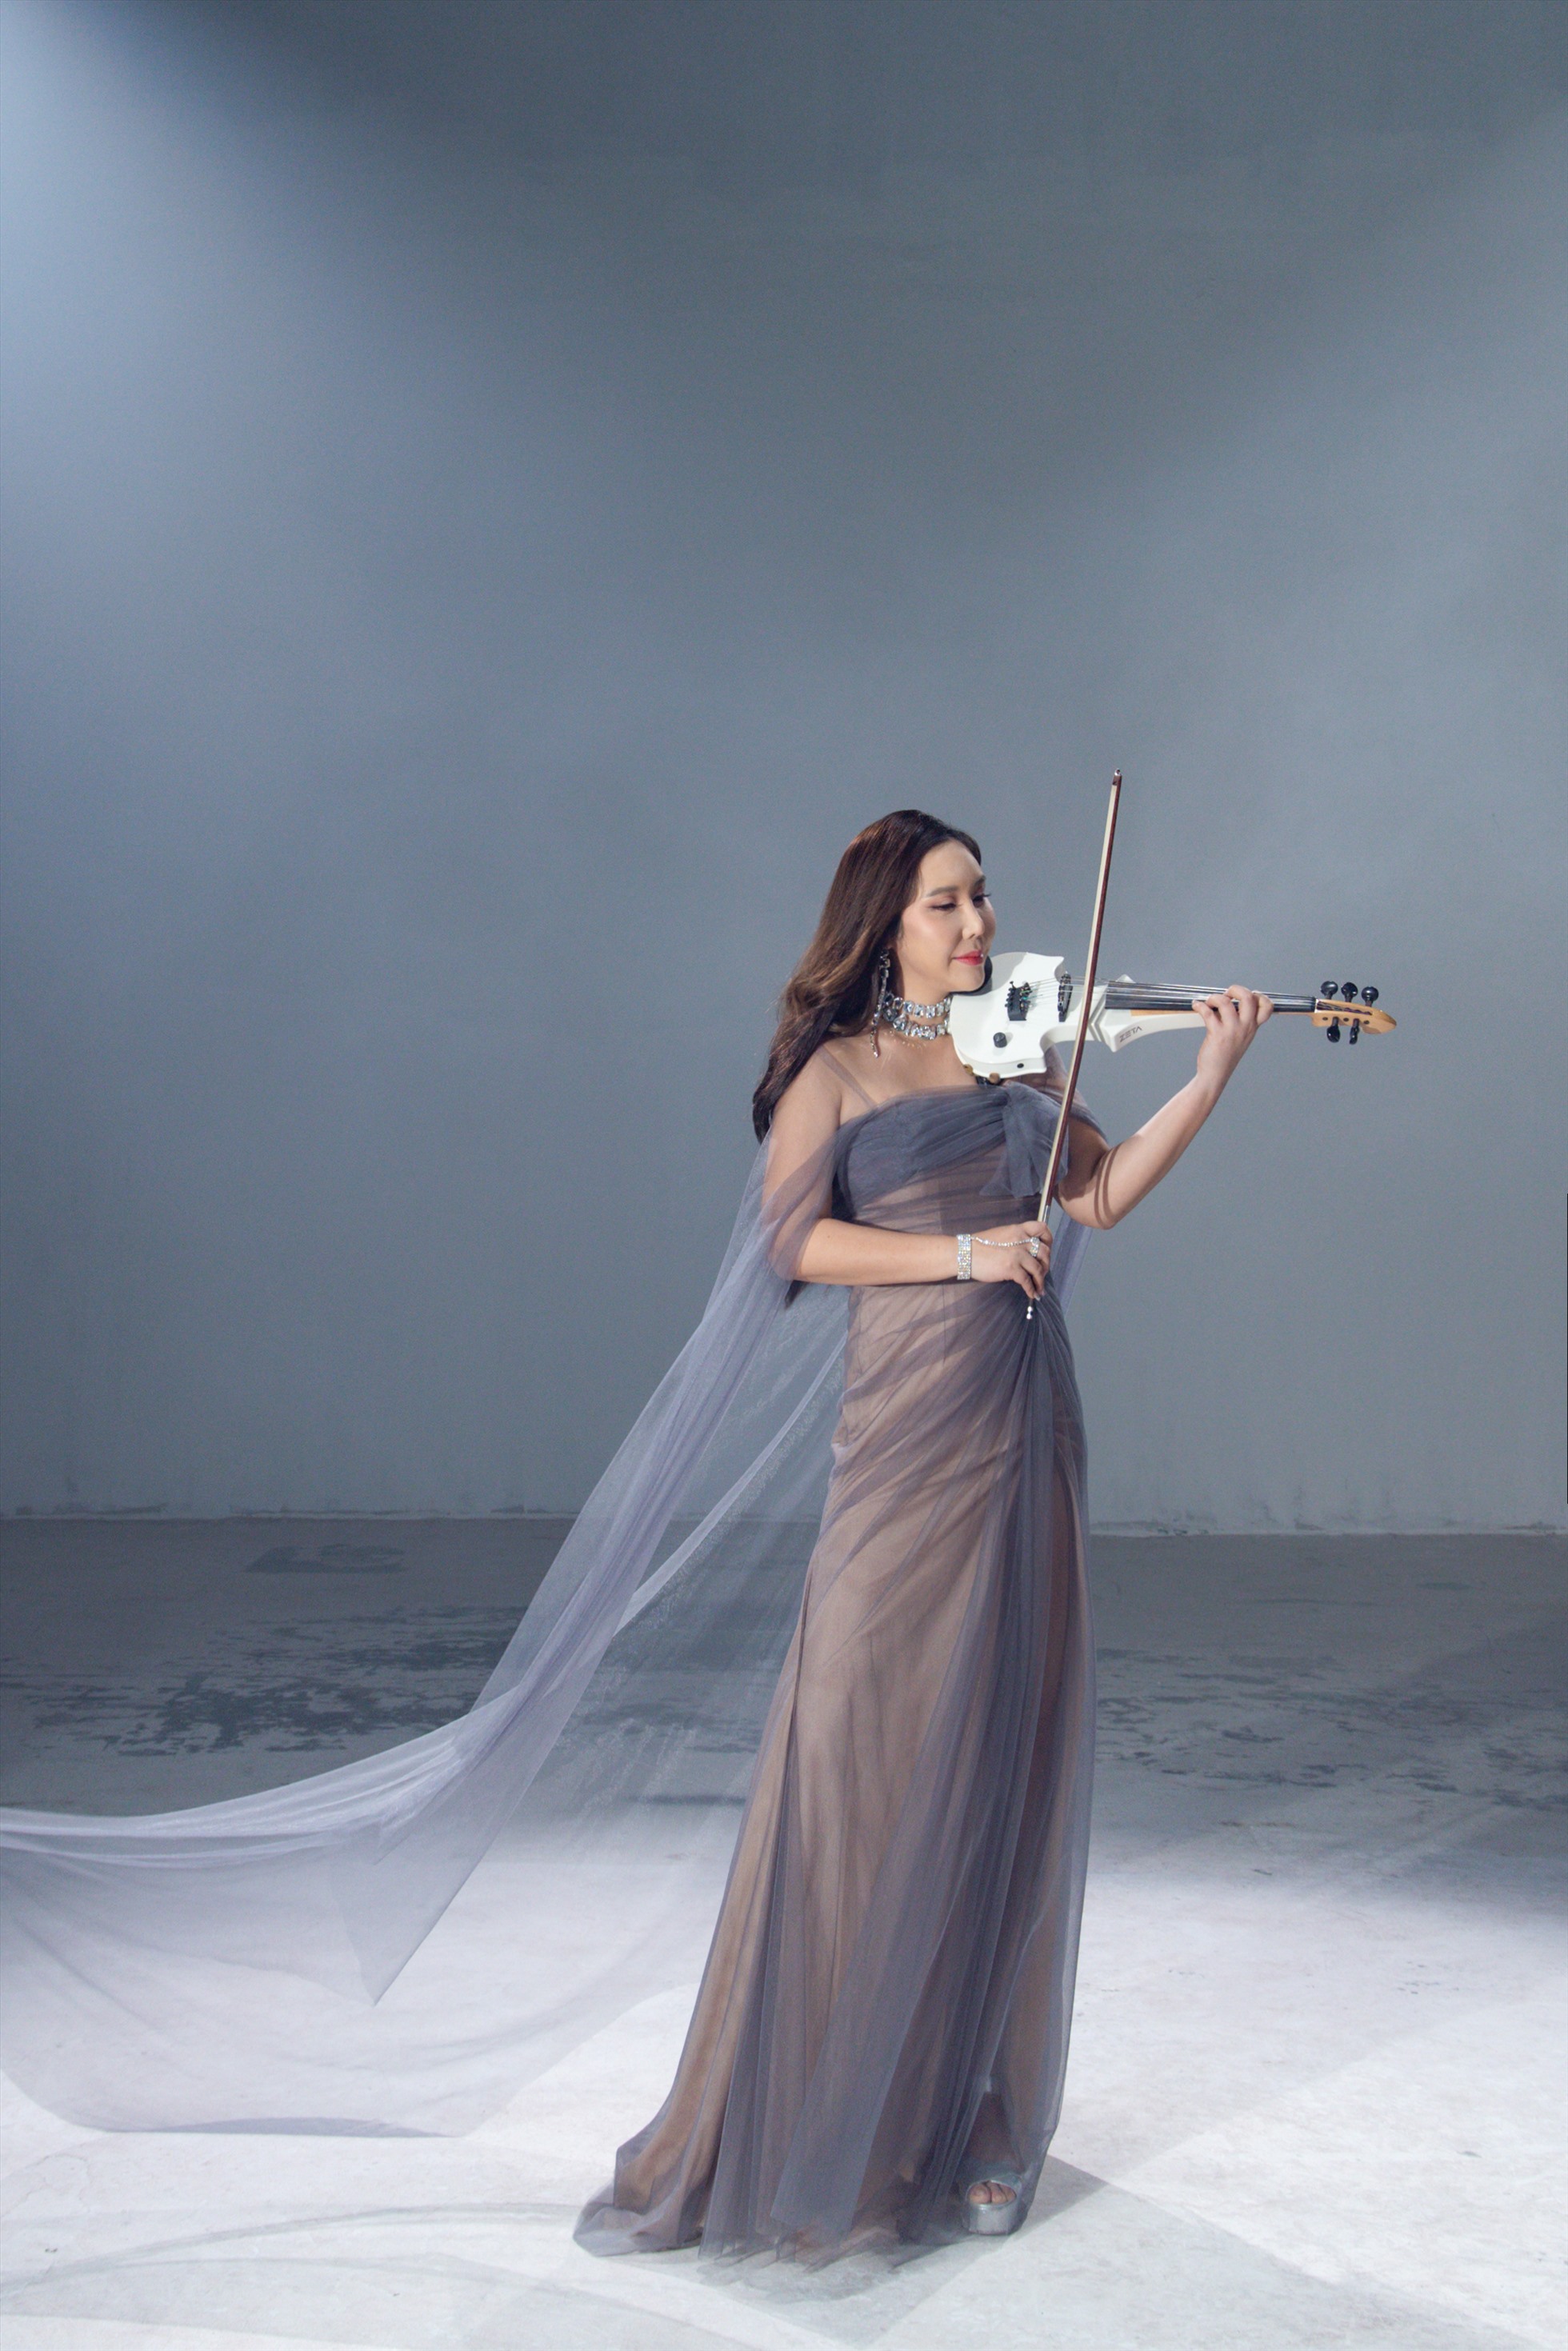 Đặc biệt, “Carol of the Bells” qua tiếng đàn violin của Jmi Ko đã thổi hồn cho ca khúc, mang lại làn gió mới mẻ hơn.